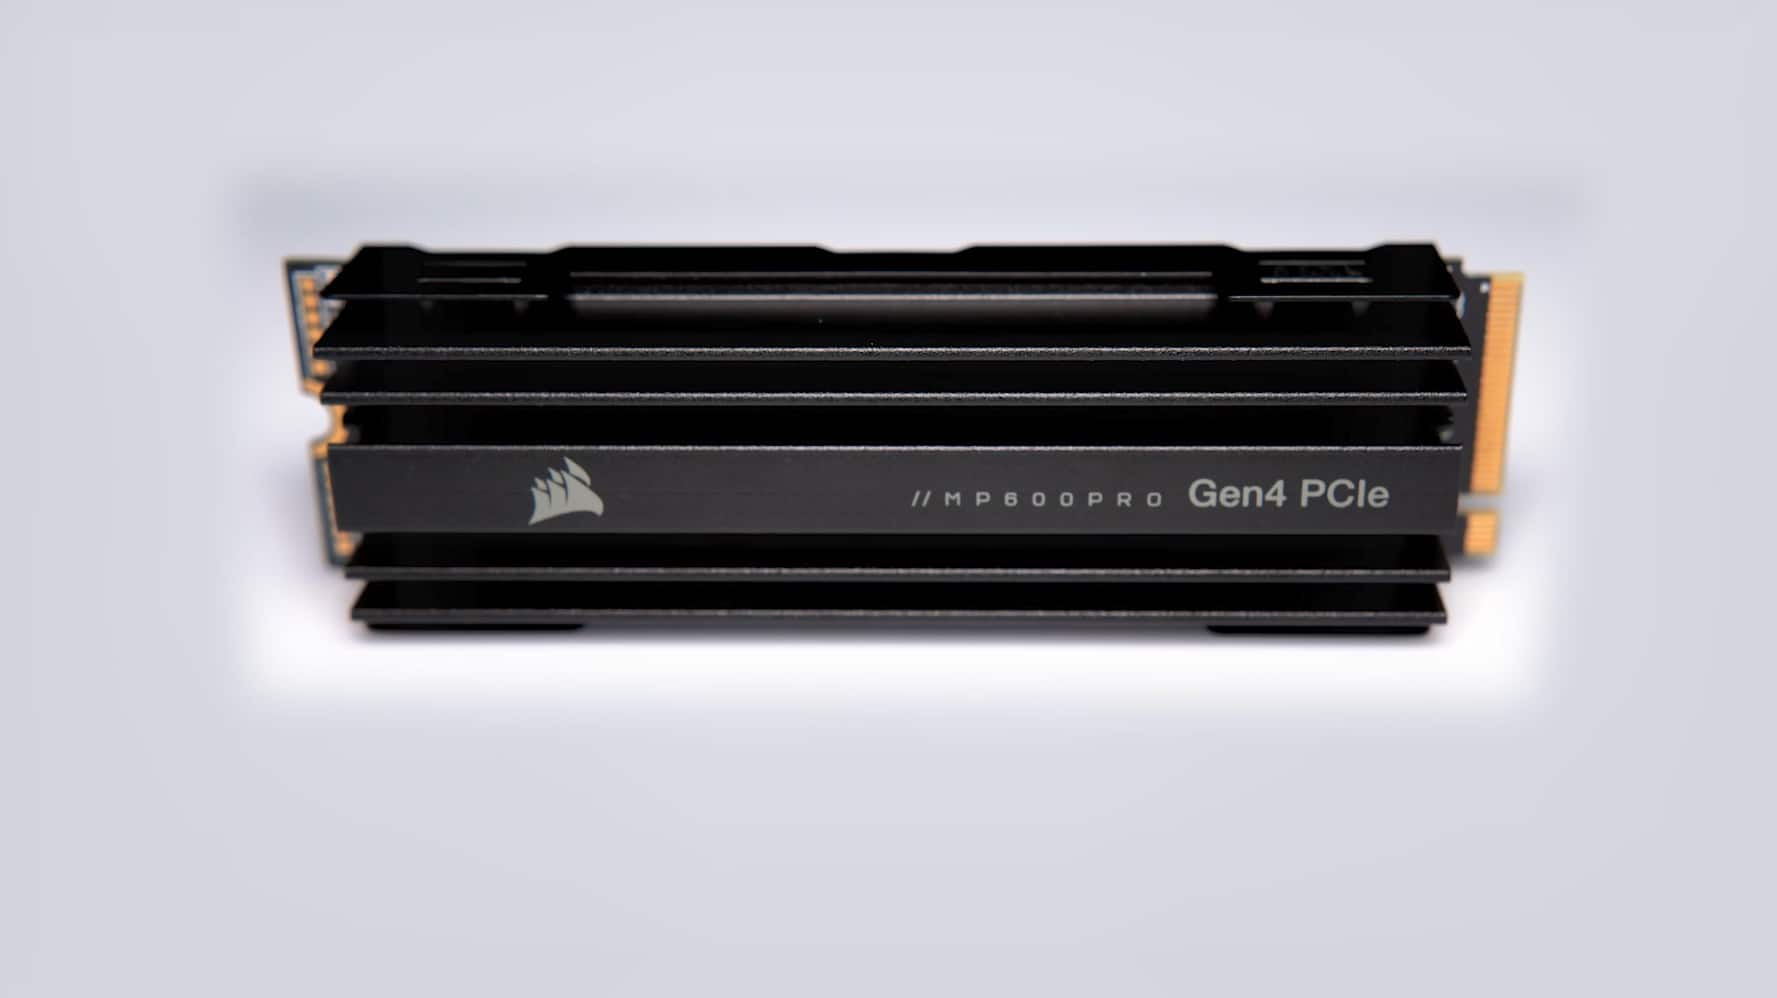 MP600 PRO 2TB M.2 NVMe PCIe Gen. 4 x4 SSD